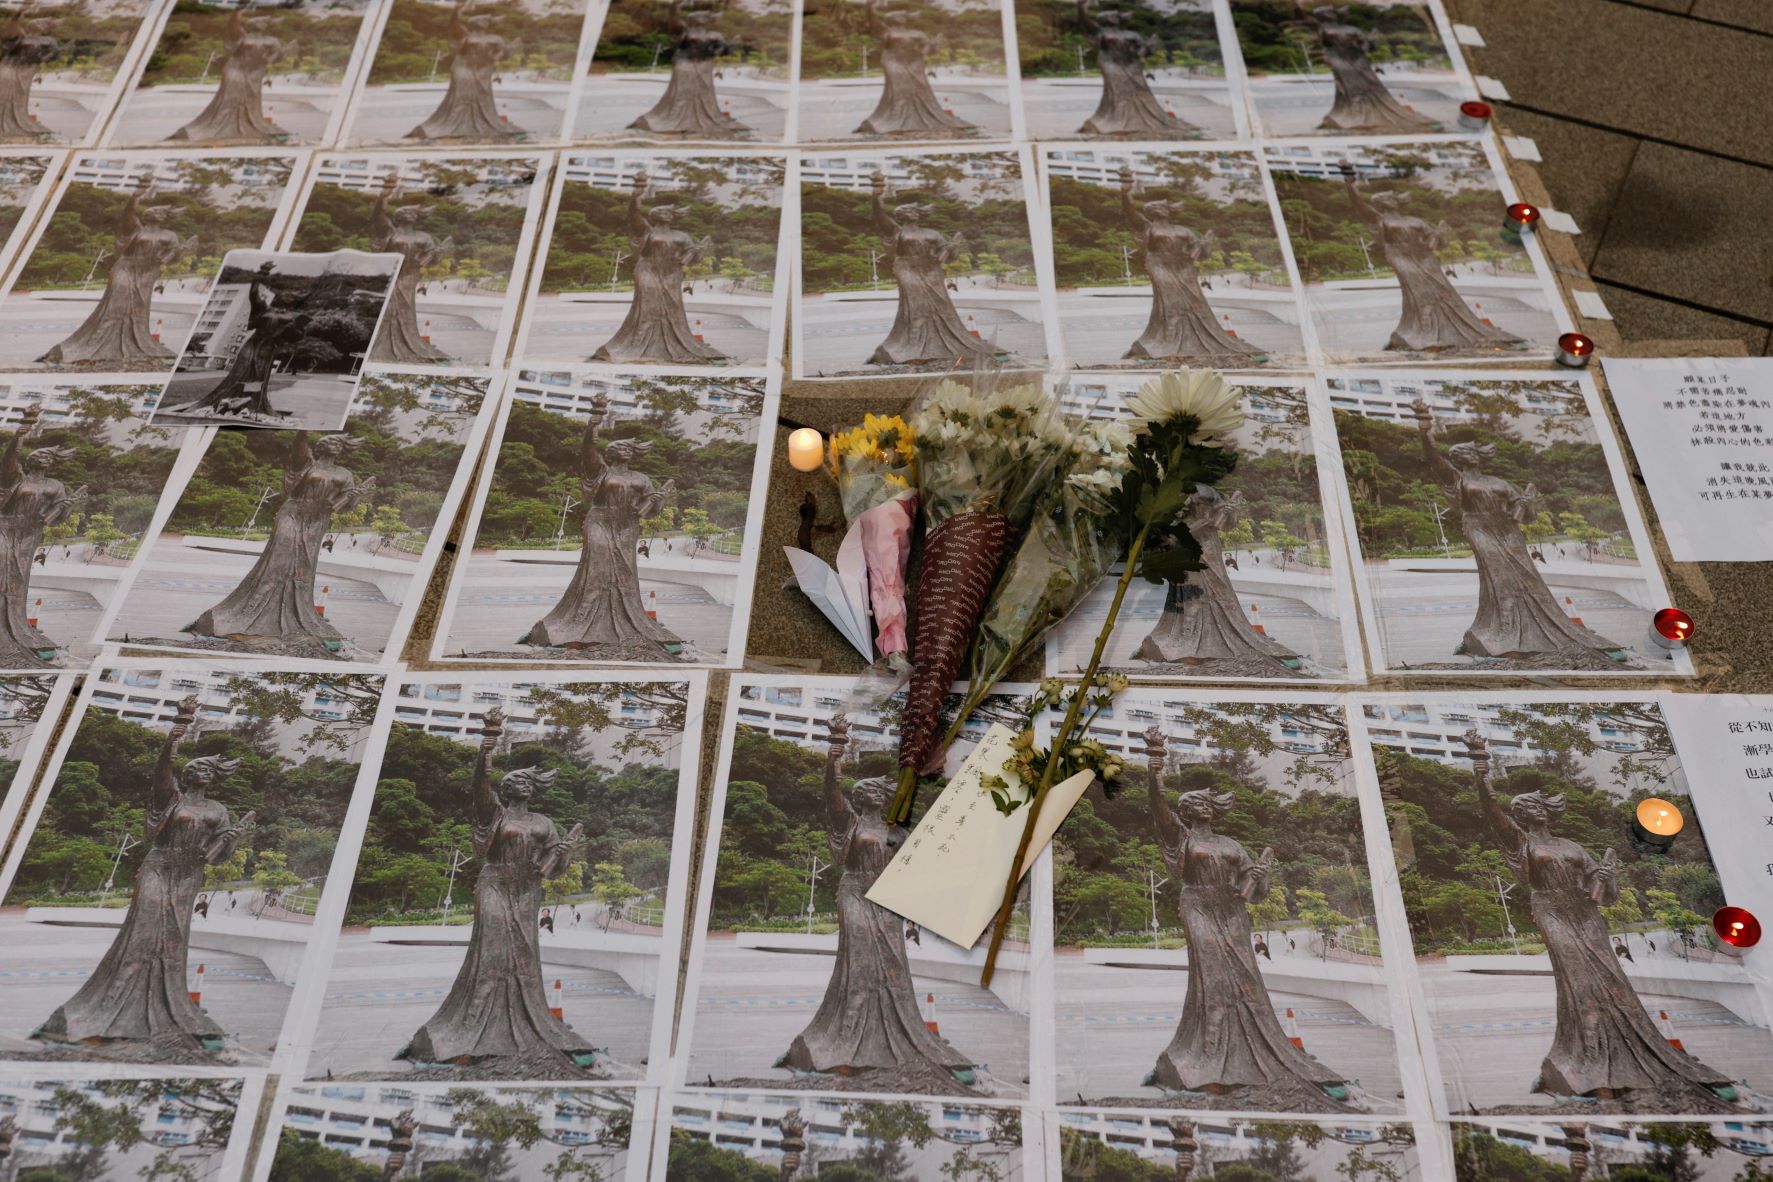 زهور وكتابات وصور لـ"إلهة الحرية" في مكان تمثالها الذي أزالته إدارة "جامعة الصين في هونغ كونغ" أخيراً 